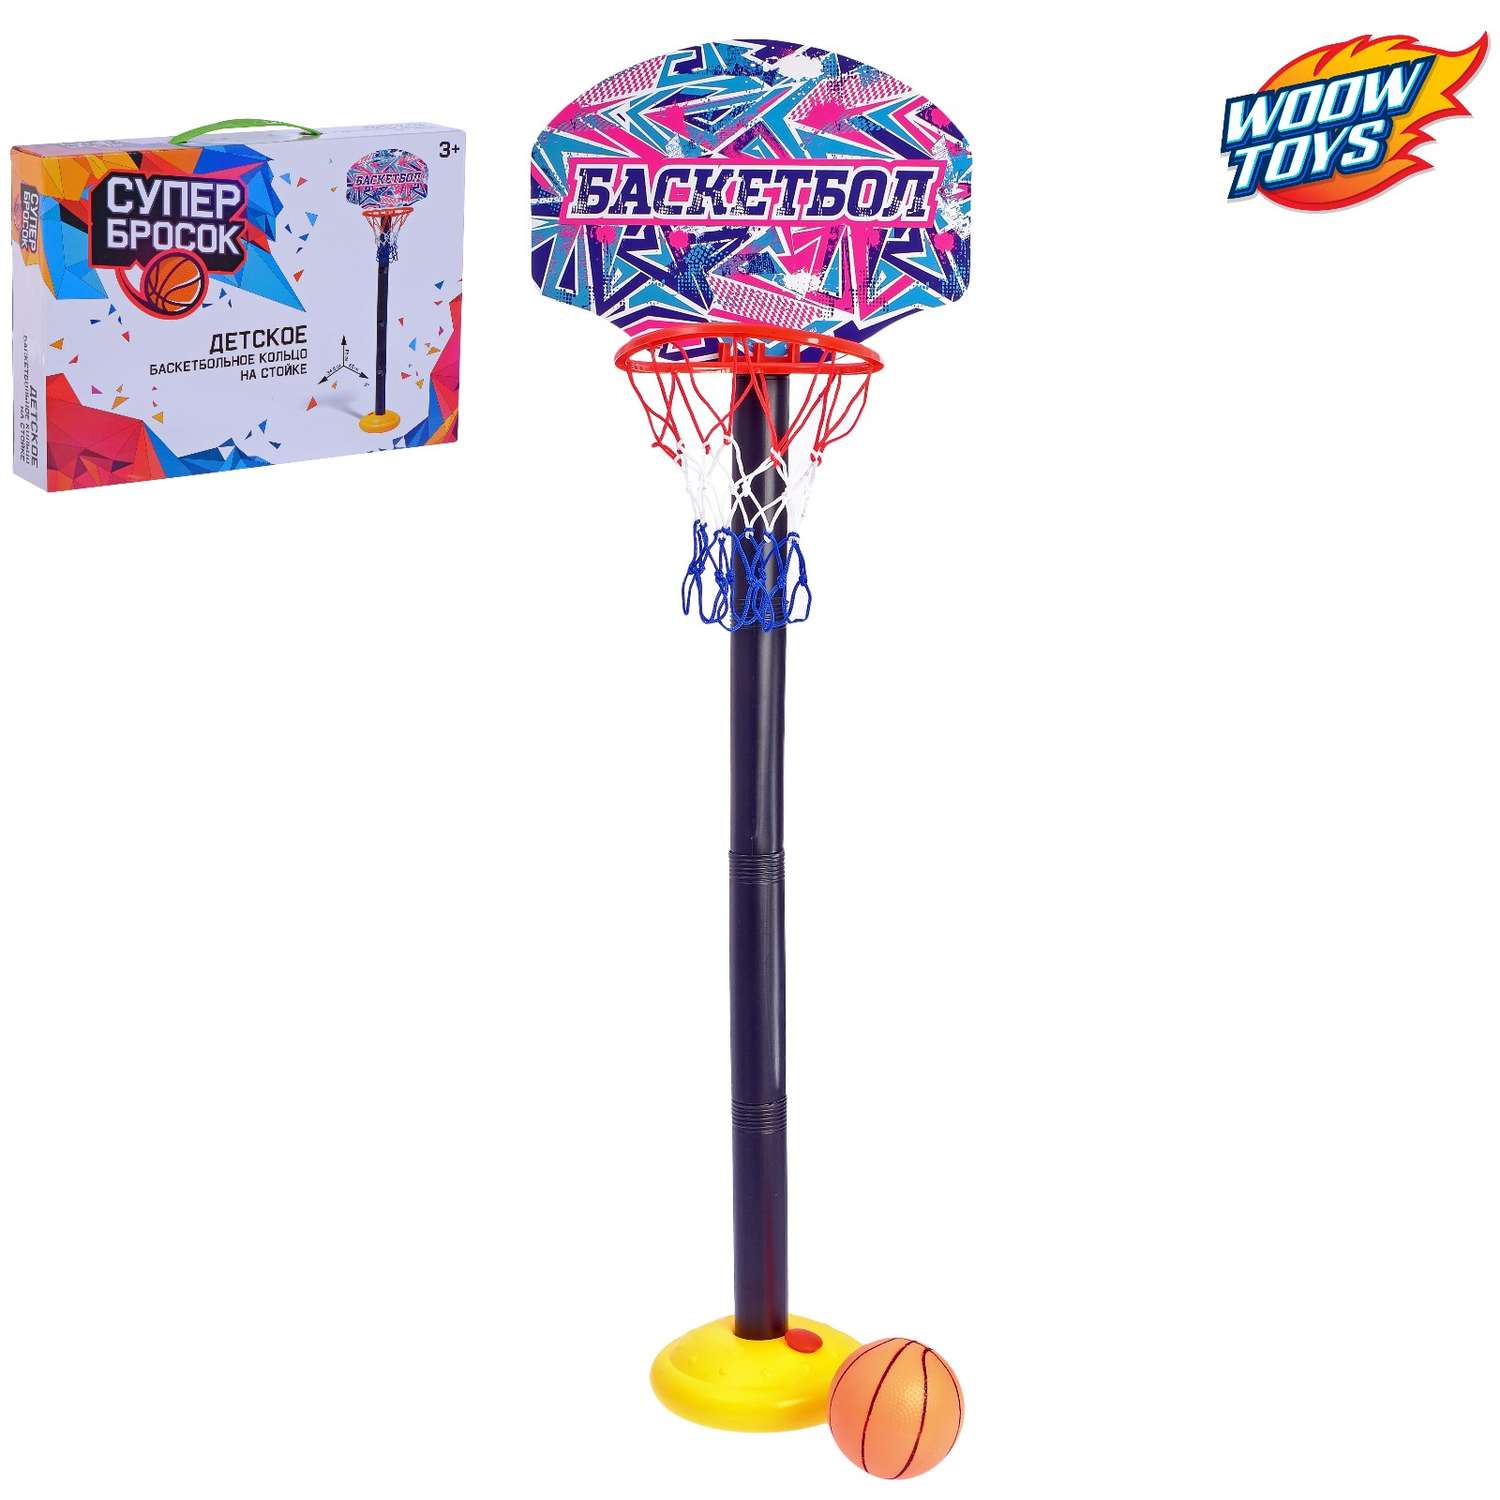 Игровой набор WOOW TOYS для баскетбола - фото 3